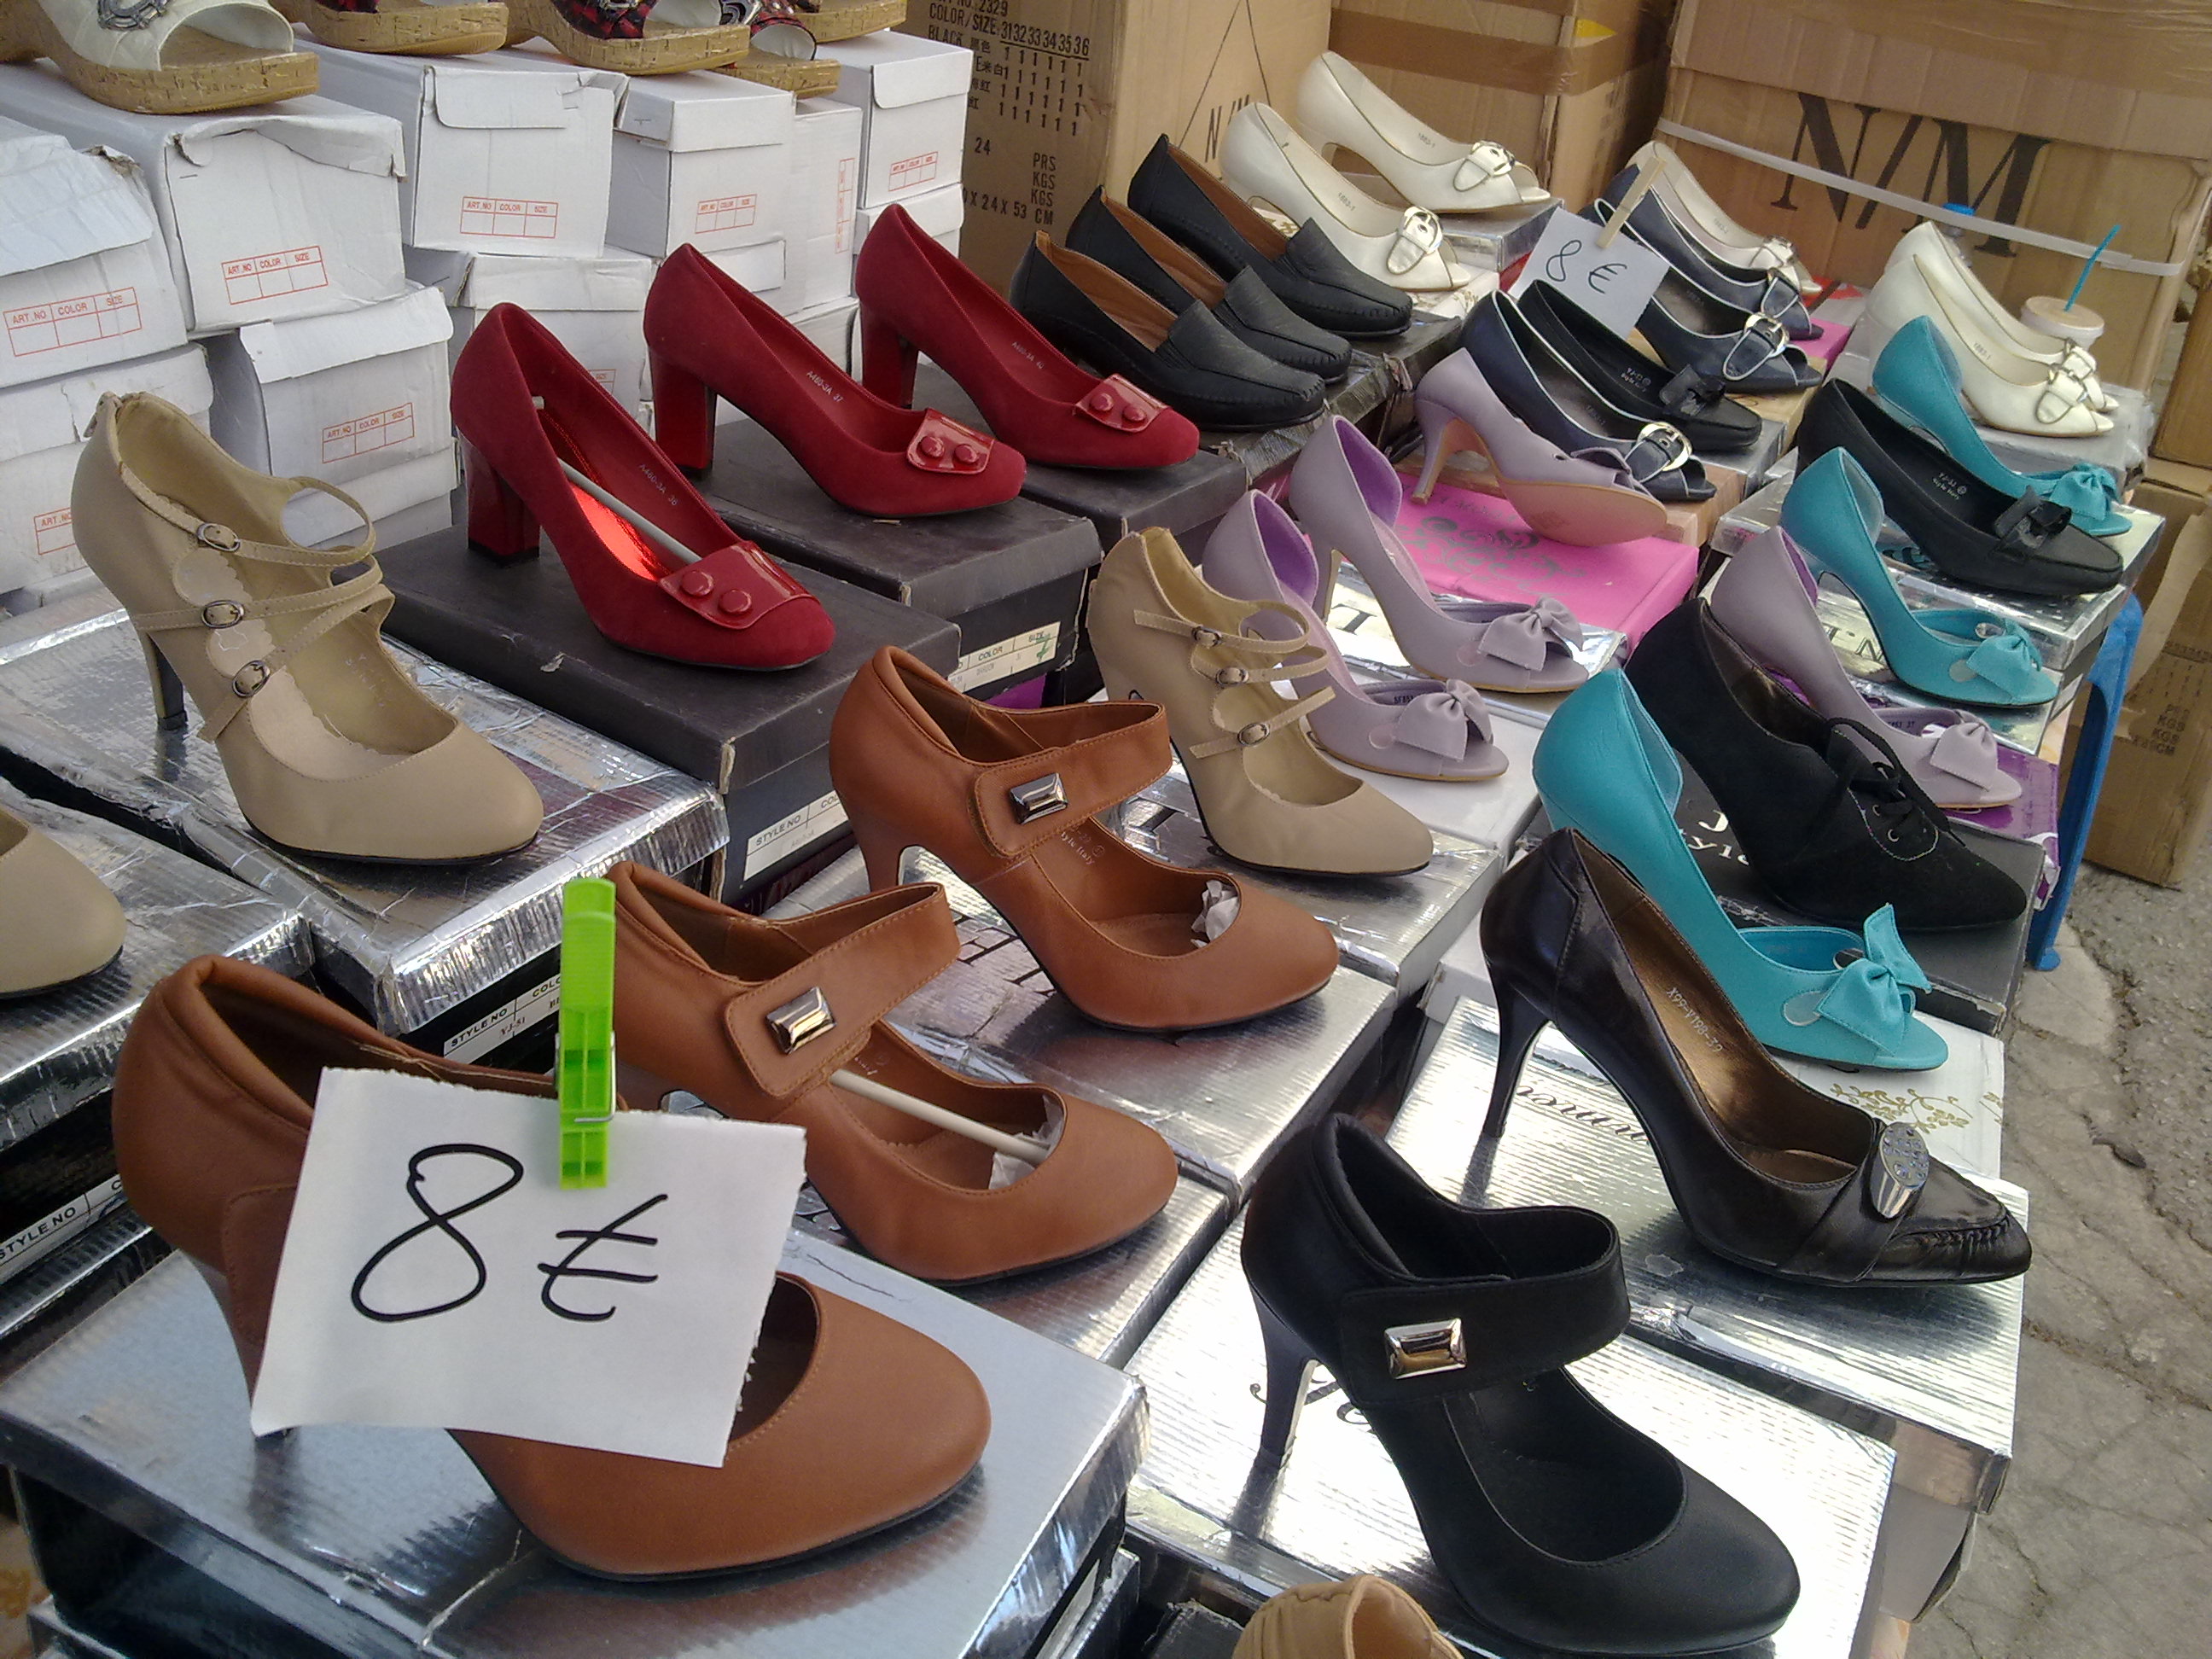 Γυναικεία παπούτσια σε όλα τα χρώματα και τιμή μόνο 8 ευρώ